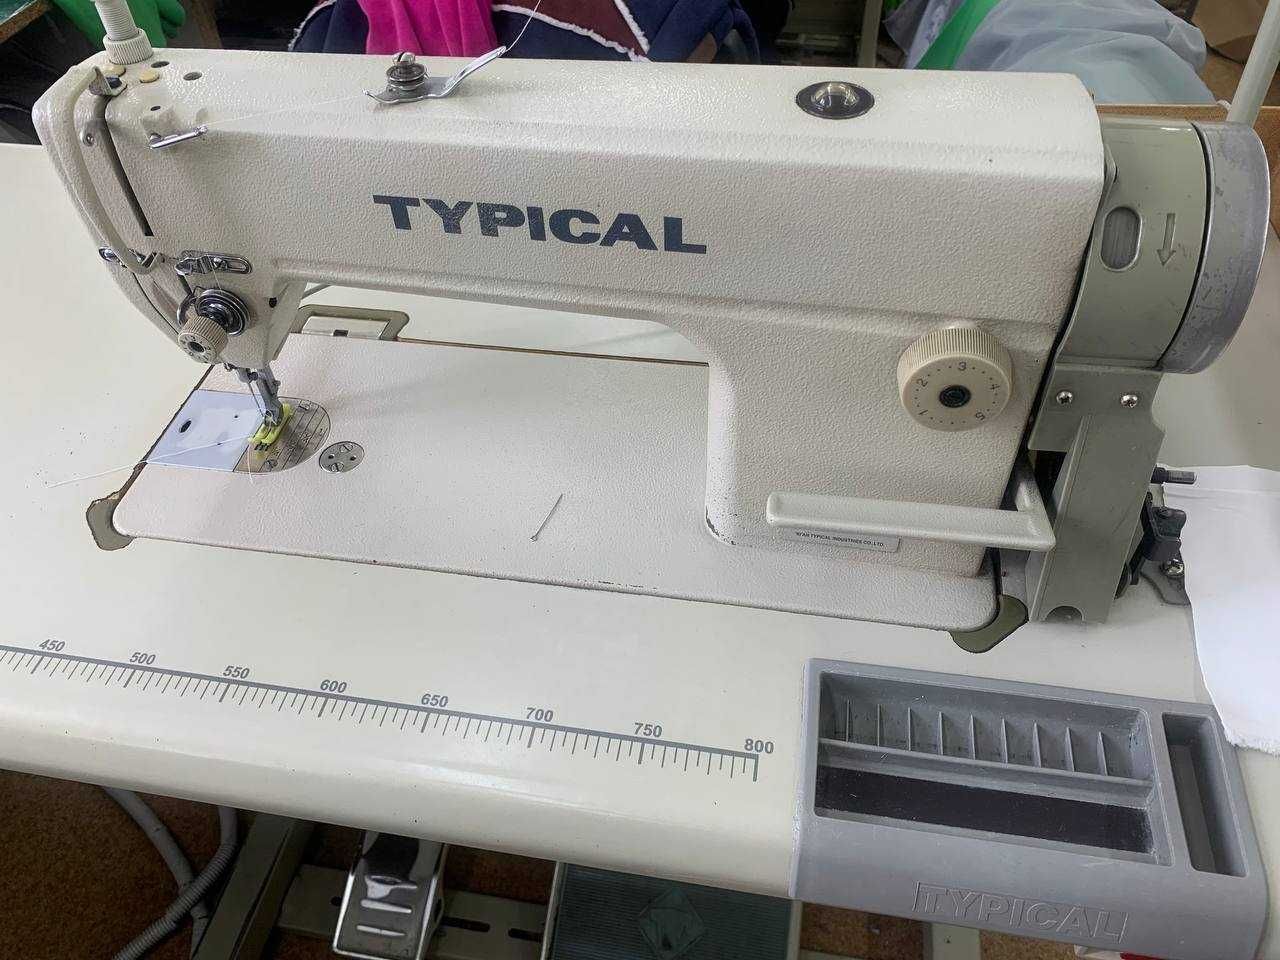 Typical GC 6150M, промислова швейна машина